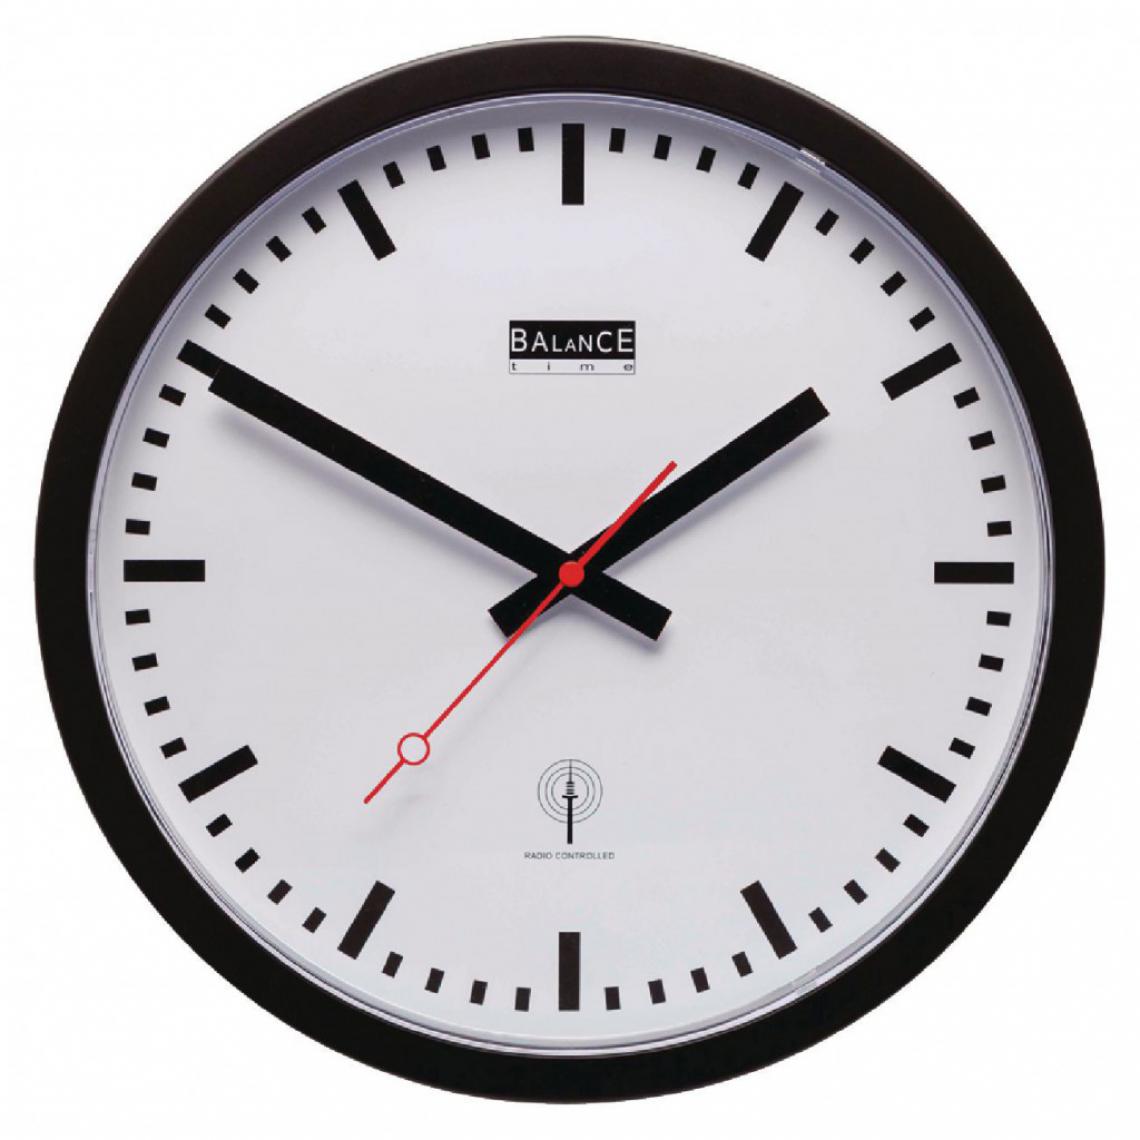 Alpexe - Horloge murale Radio-contrôlée 30 cm Analogiques Blanc/Noir - Horloges, pendules